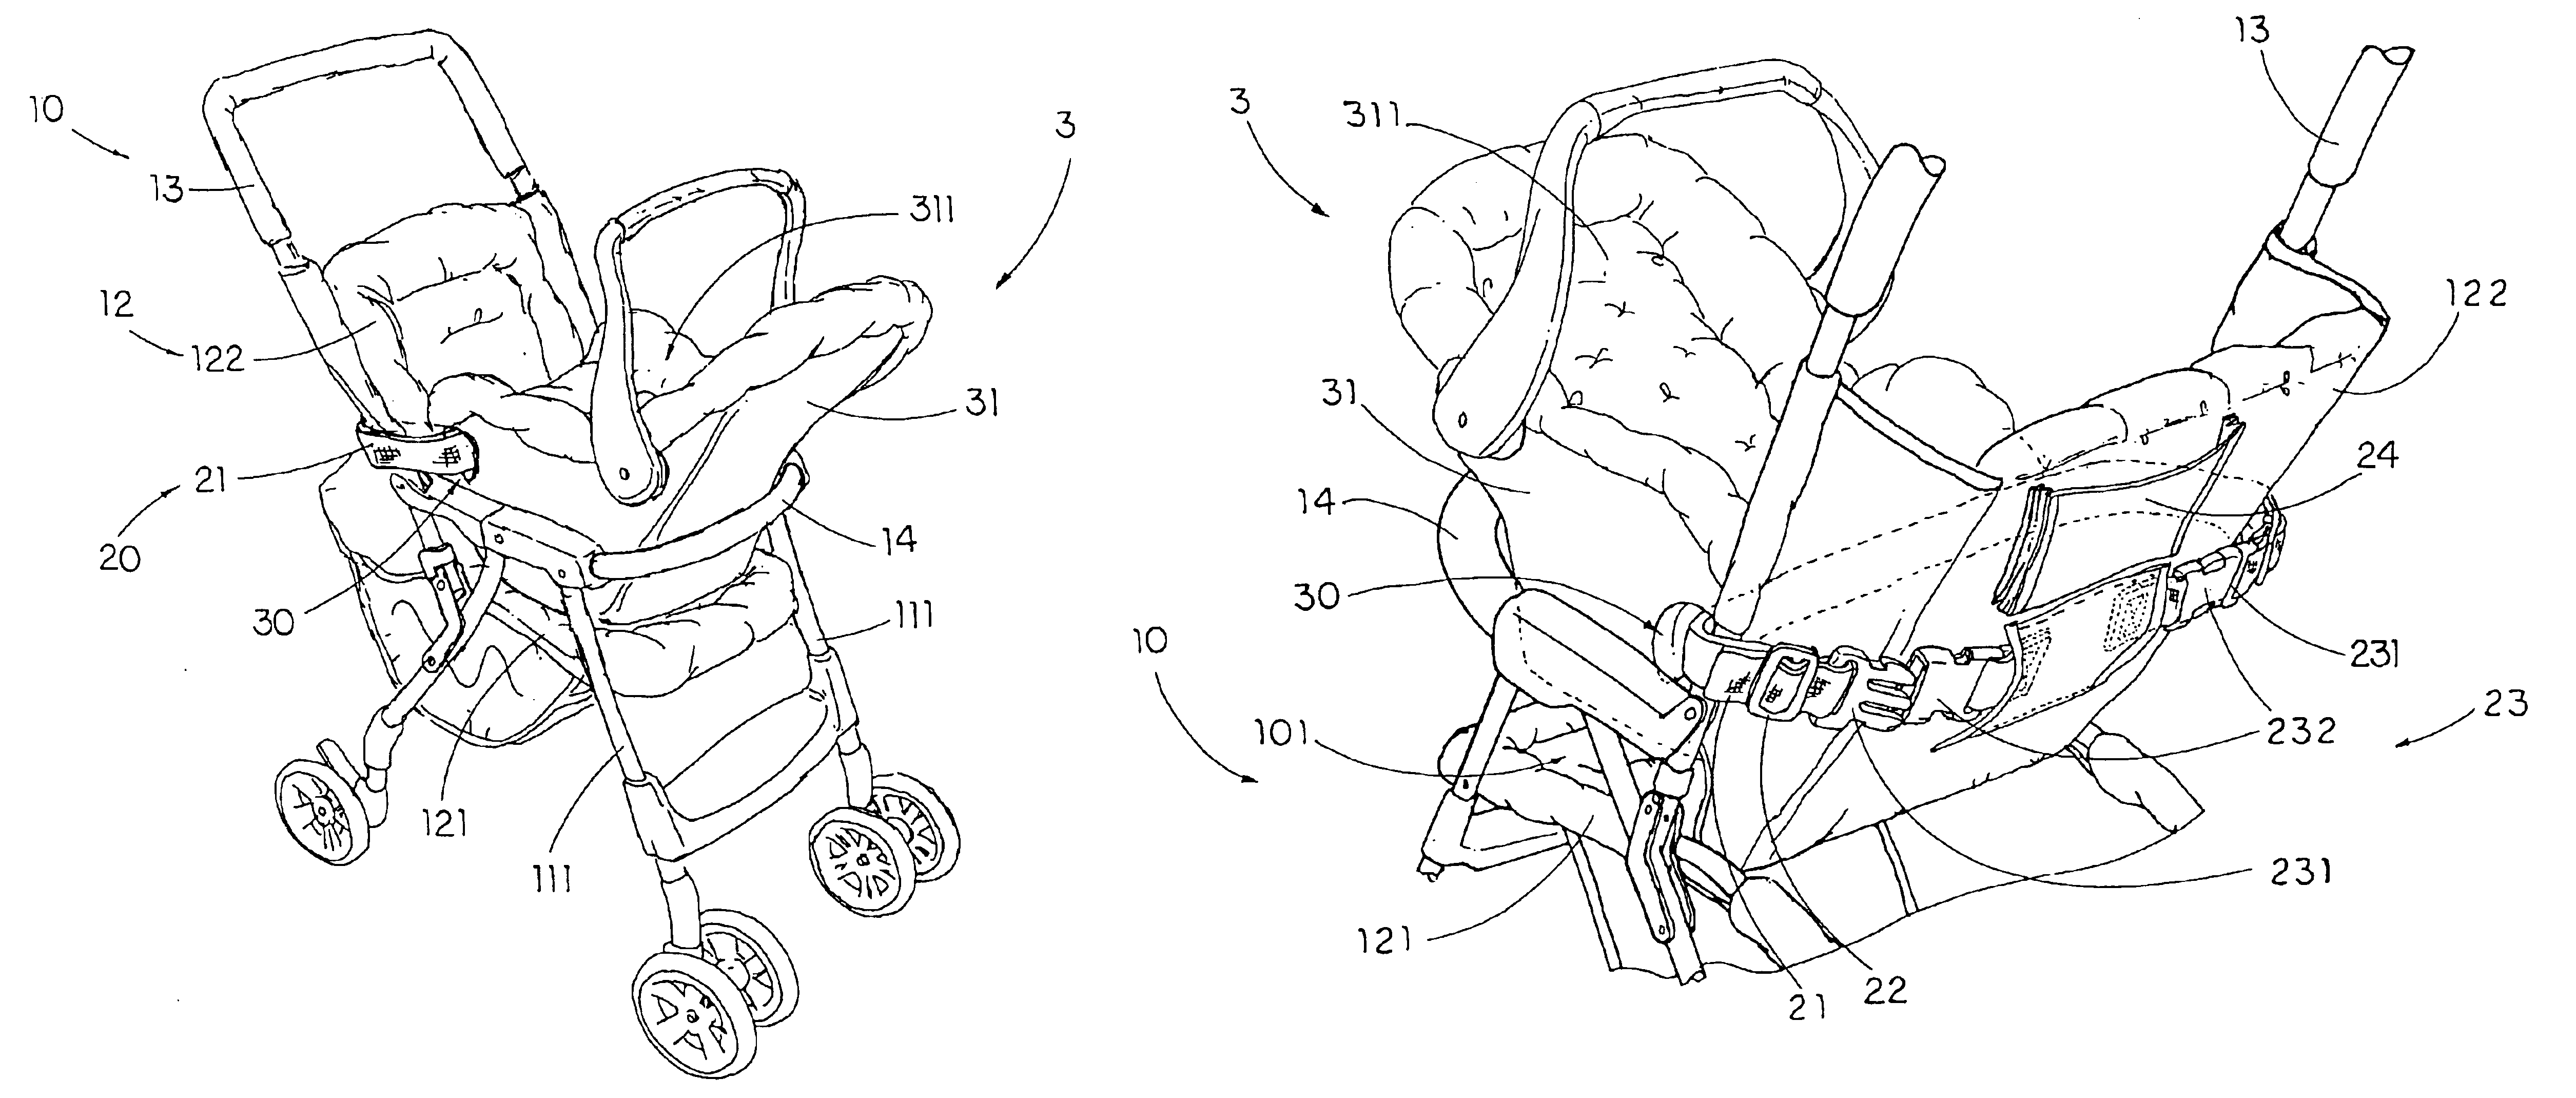 Stroller with car seat fastening arrangement